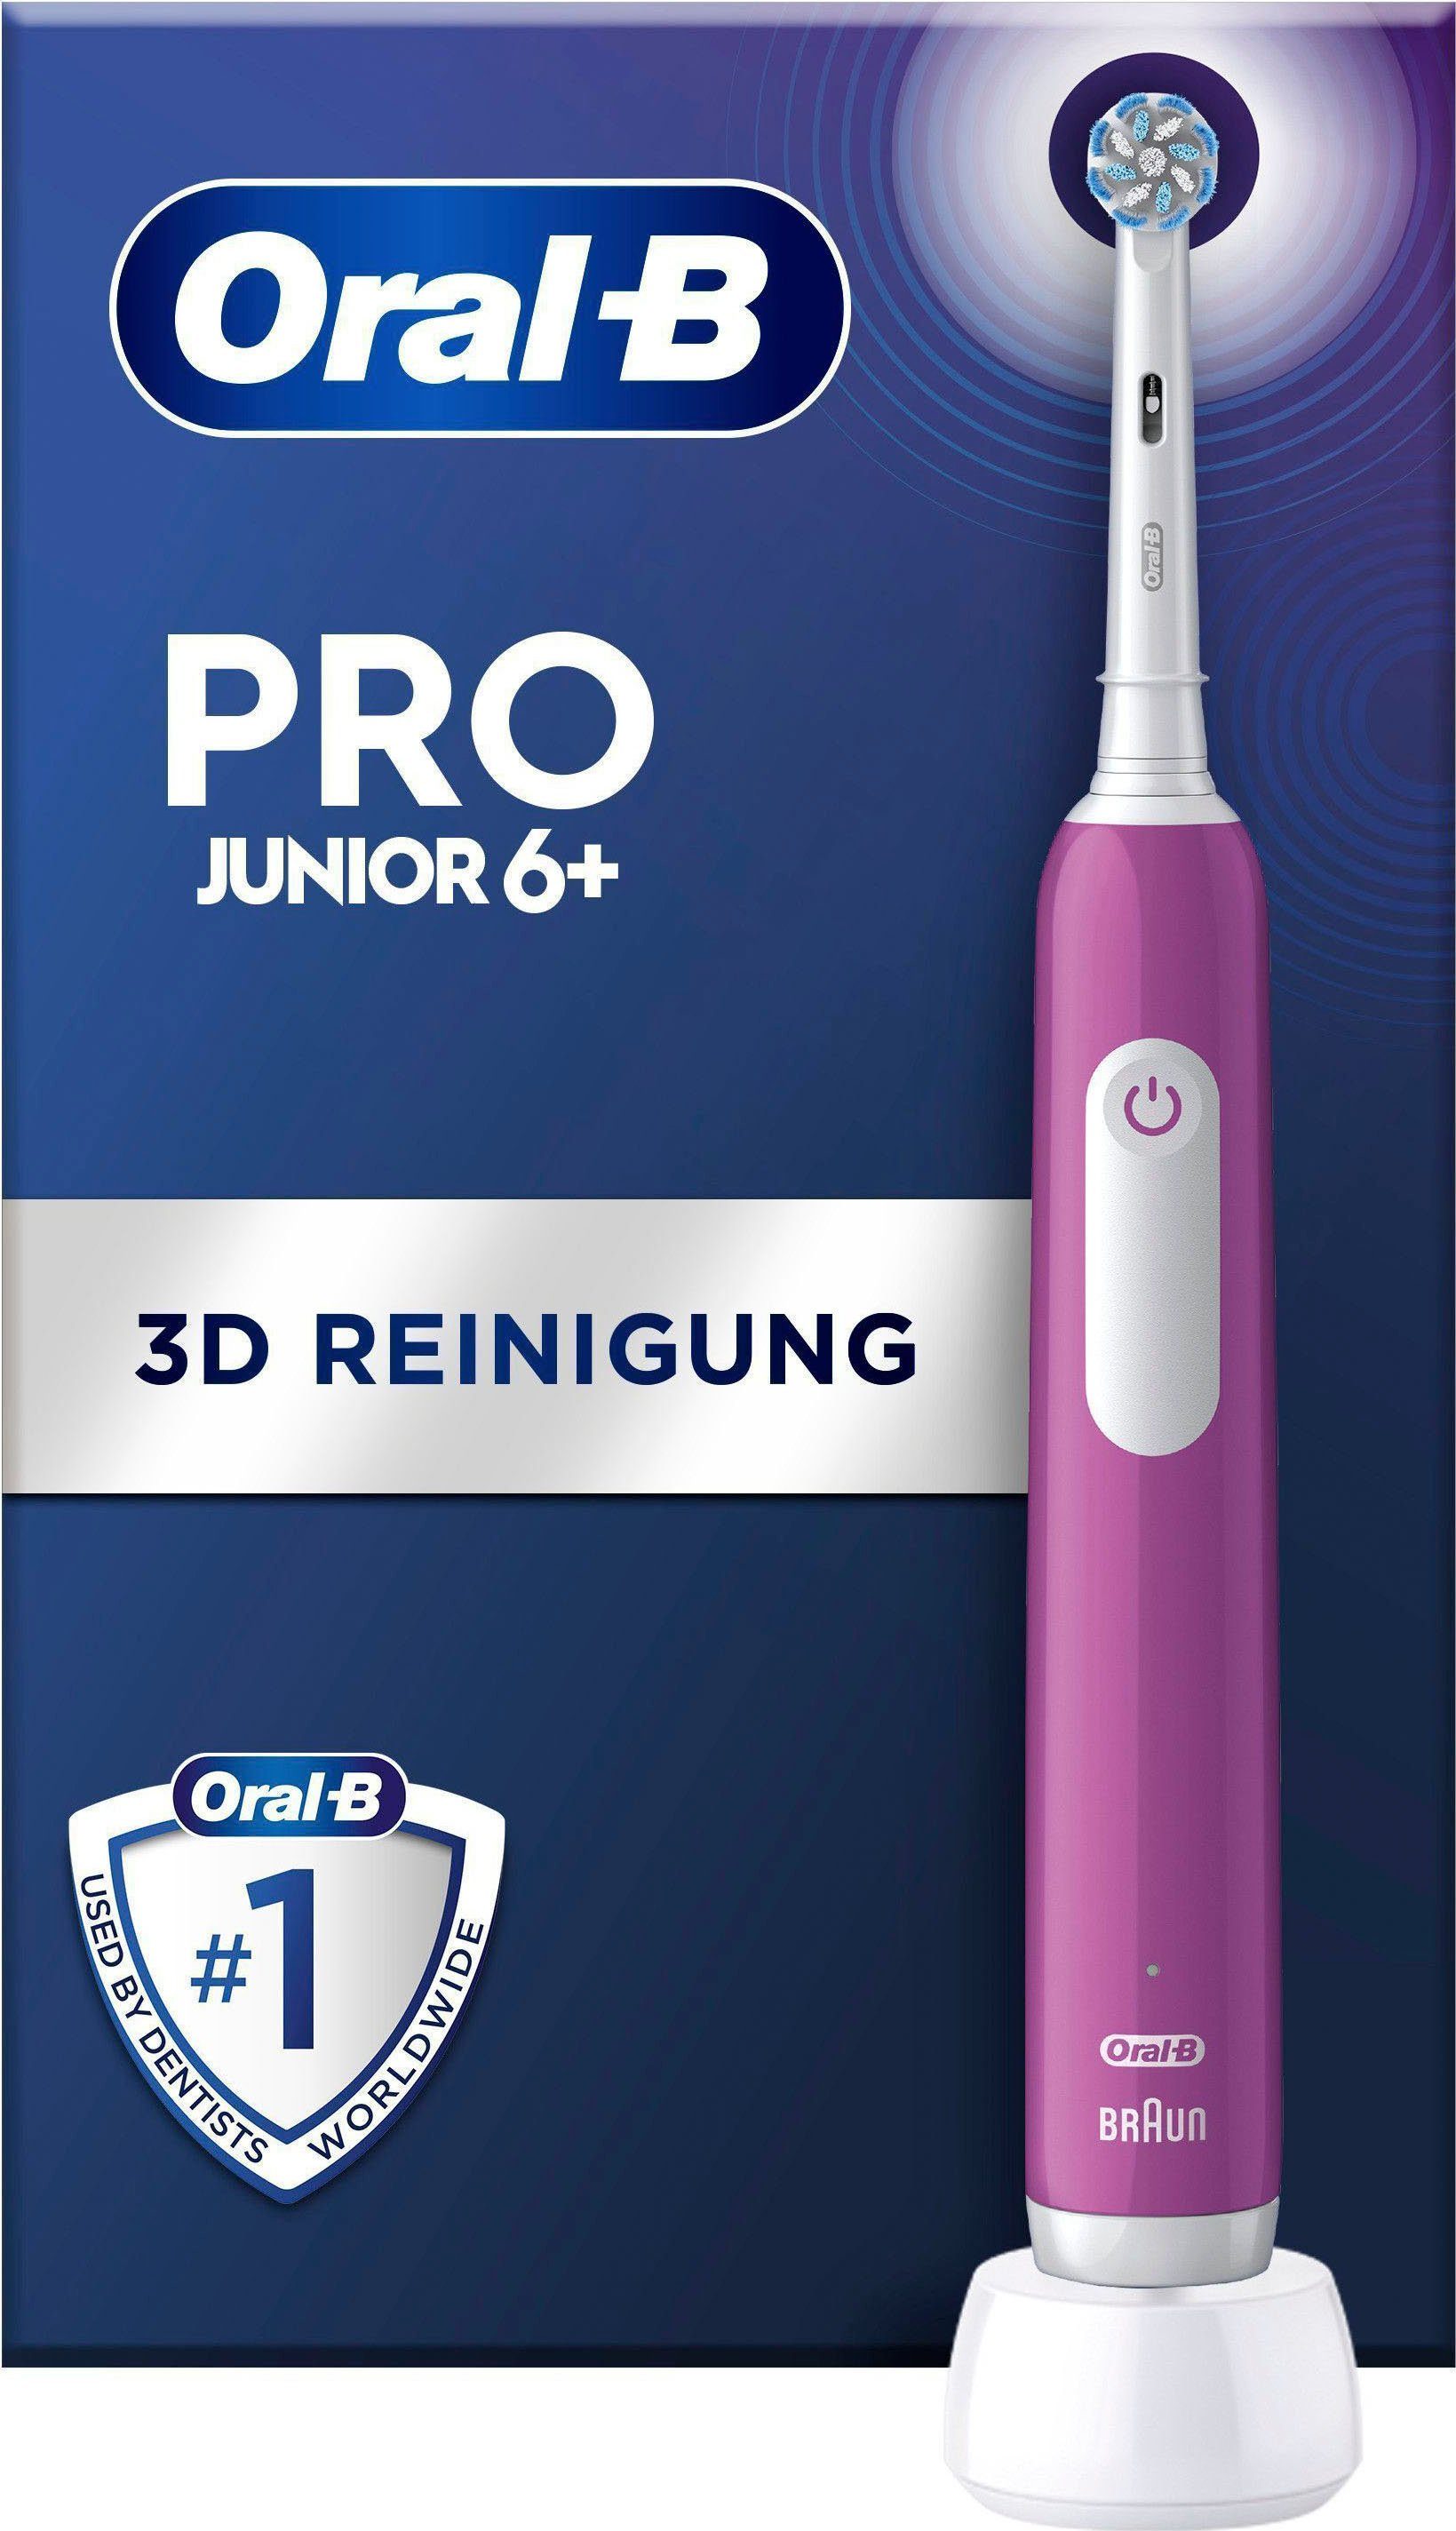 Junior, Monate alle St., Putzkraft empfehlen: Pro Drucksensor, 1 wechseln Zahnbürste 3 für 100% Aufsteckbürsten: Oral-B Elektrische Bürstenkopf Zahnärzte